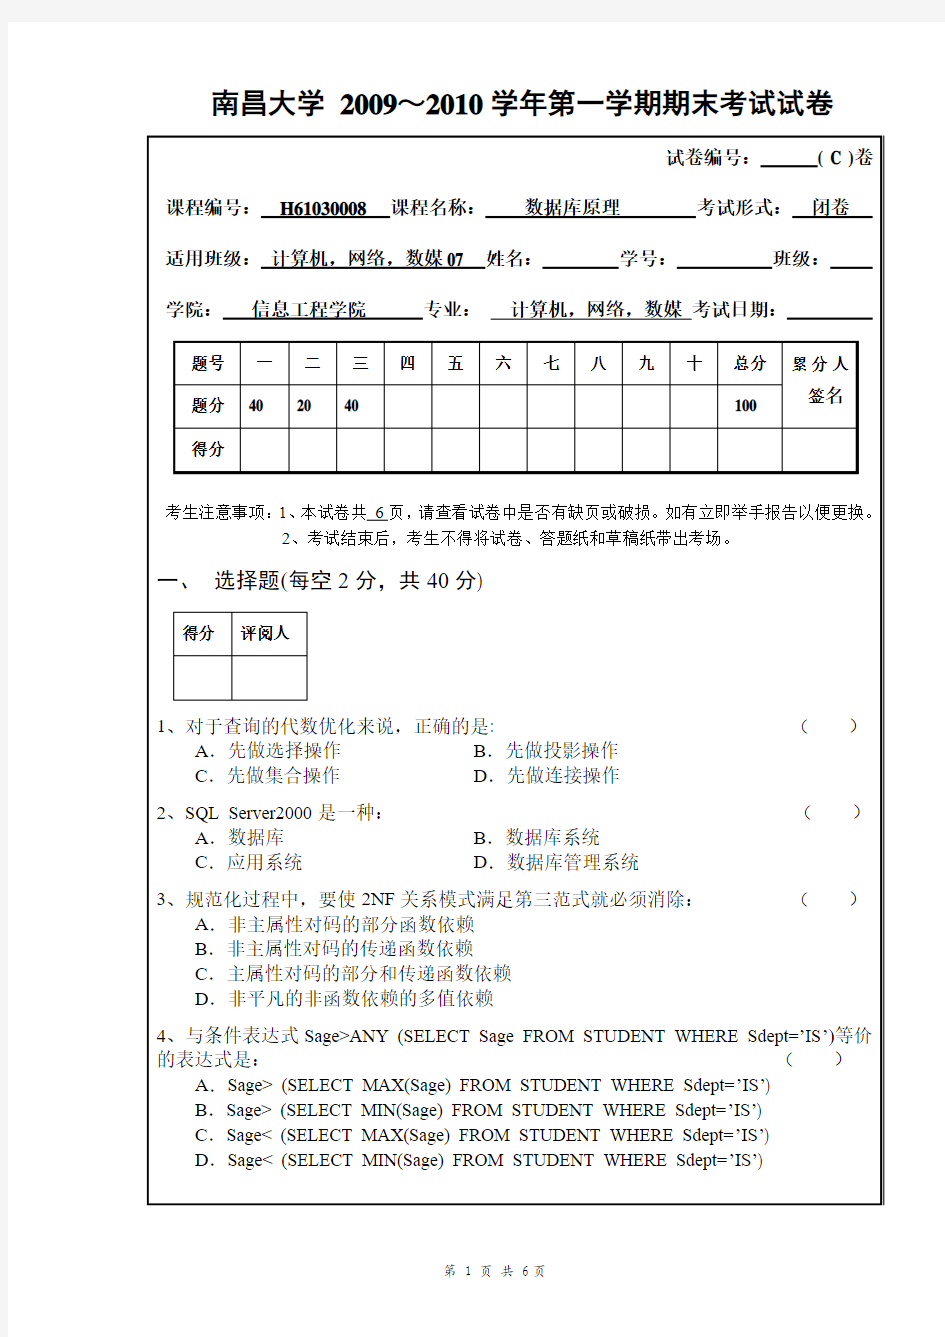 南昌大学 2009数据库系统期末试卷(C)